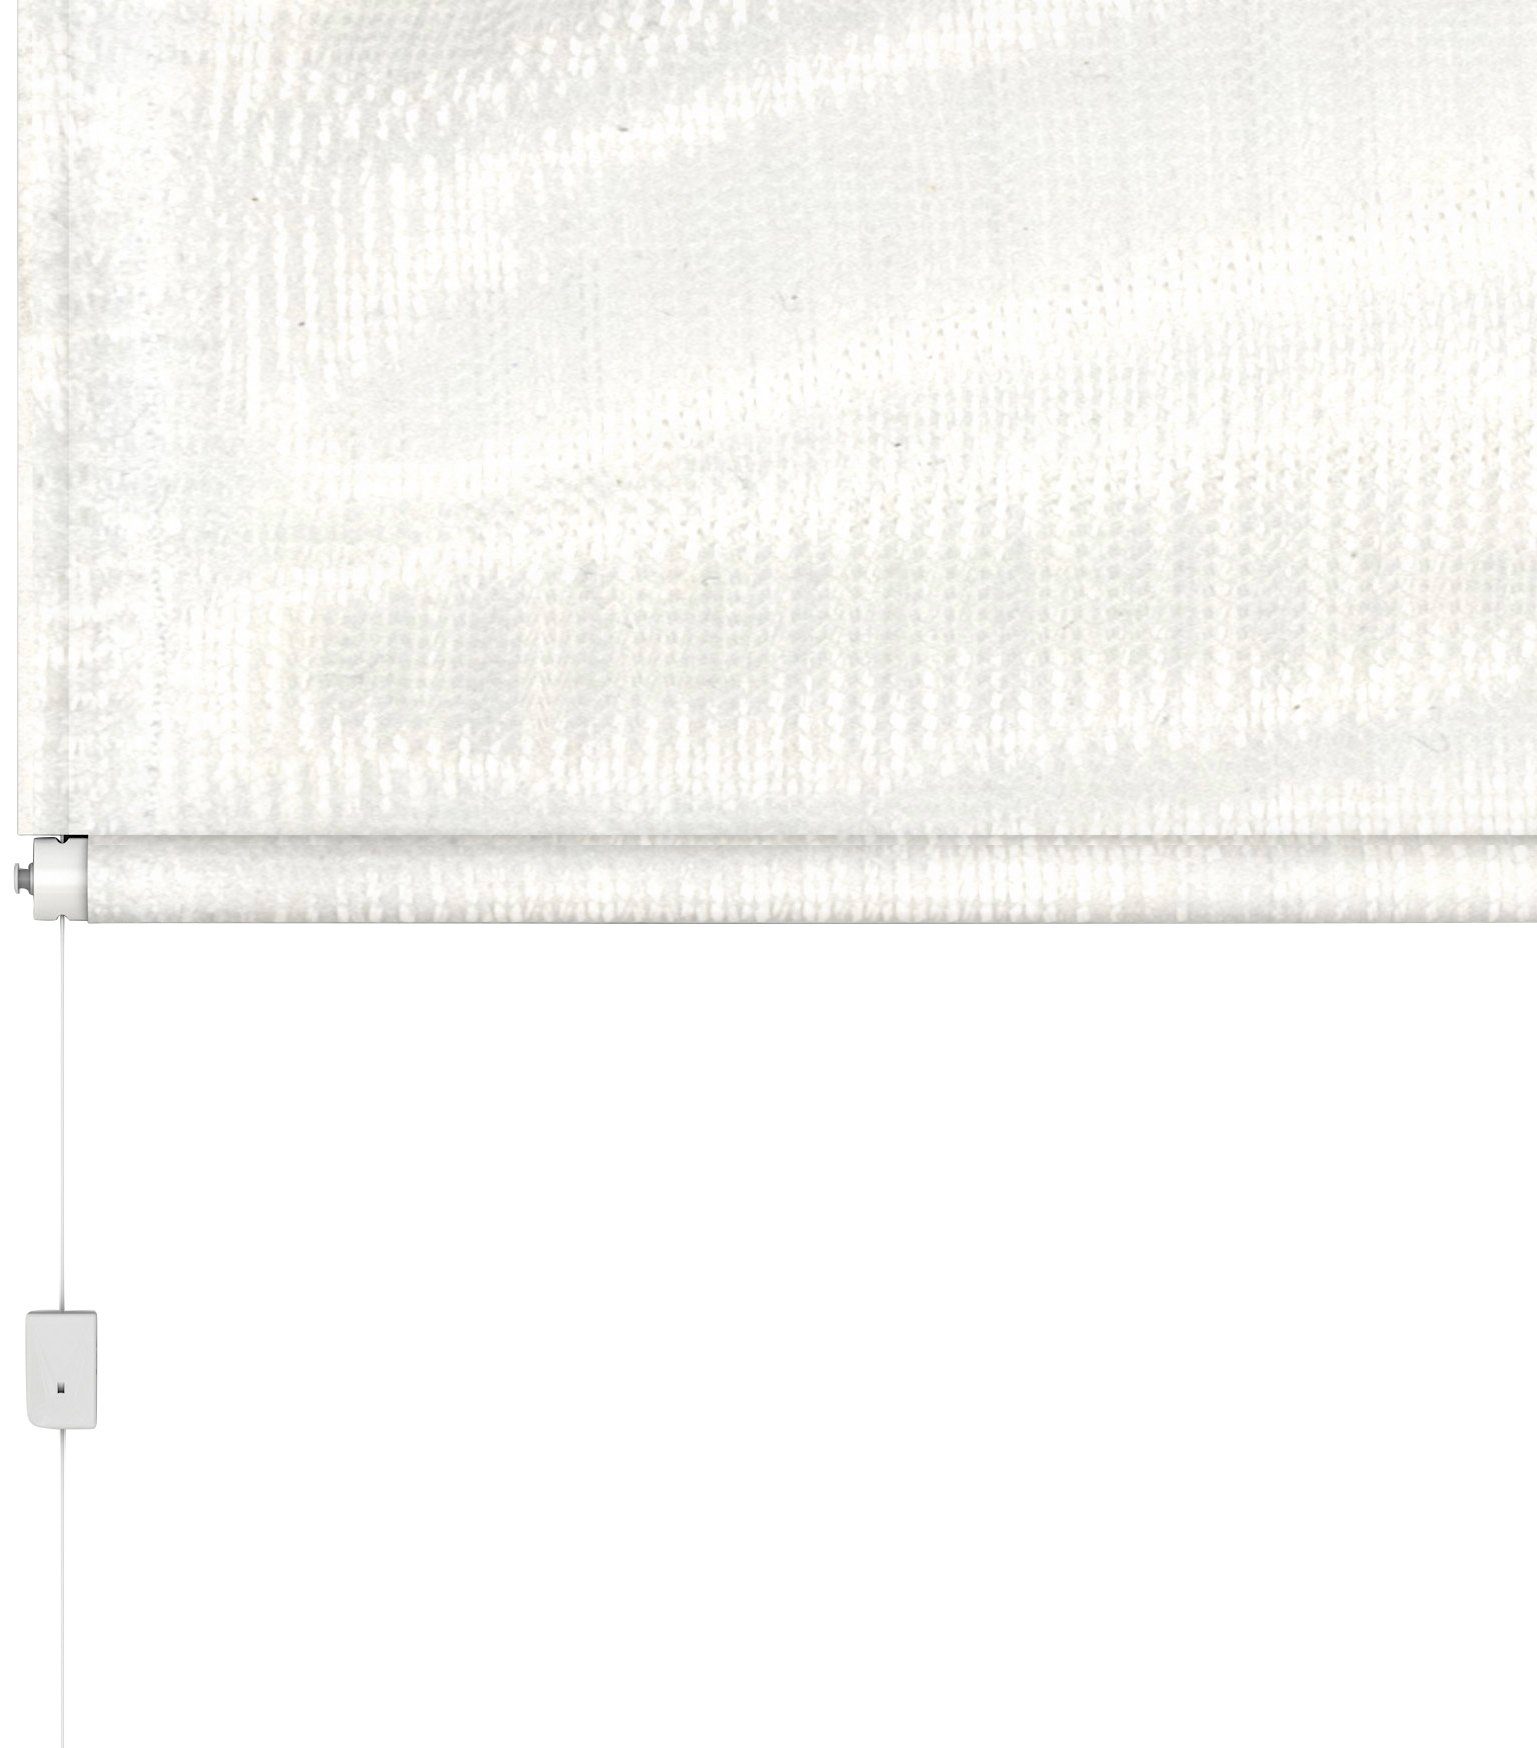 Insektenschutzrollo für Dachfenster, BASIC, hecht international, transparent, verschraubt, weiß/weiß, BxH: 110x160 cm